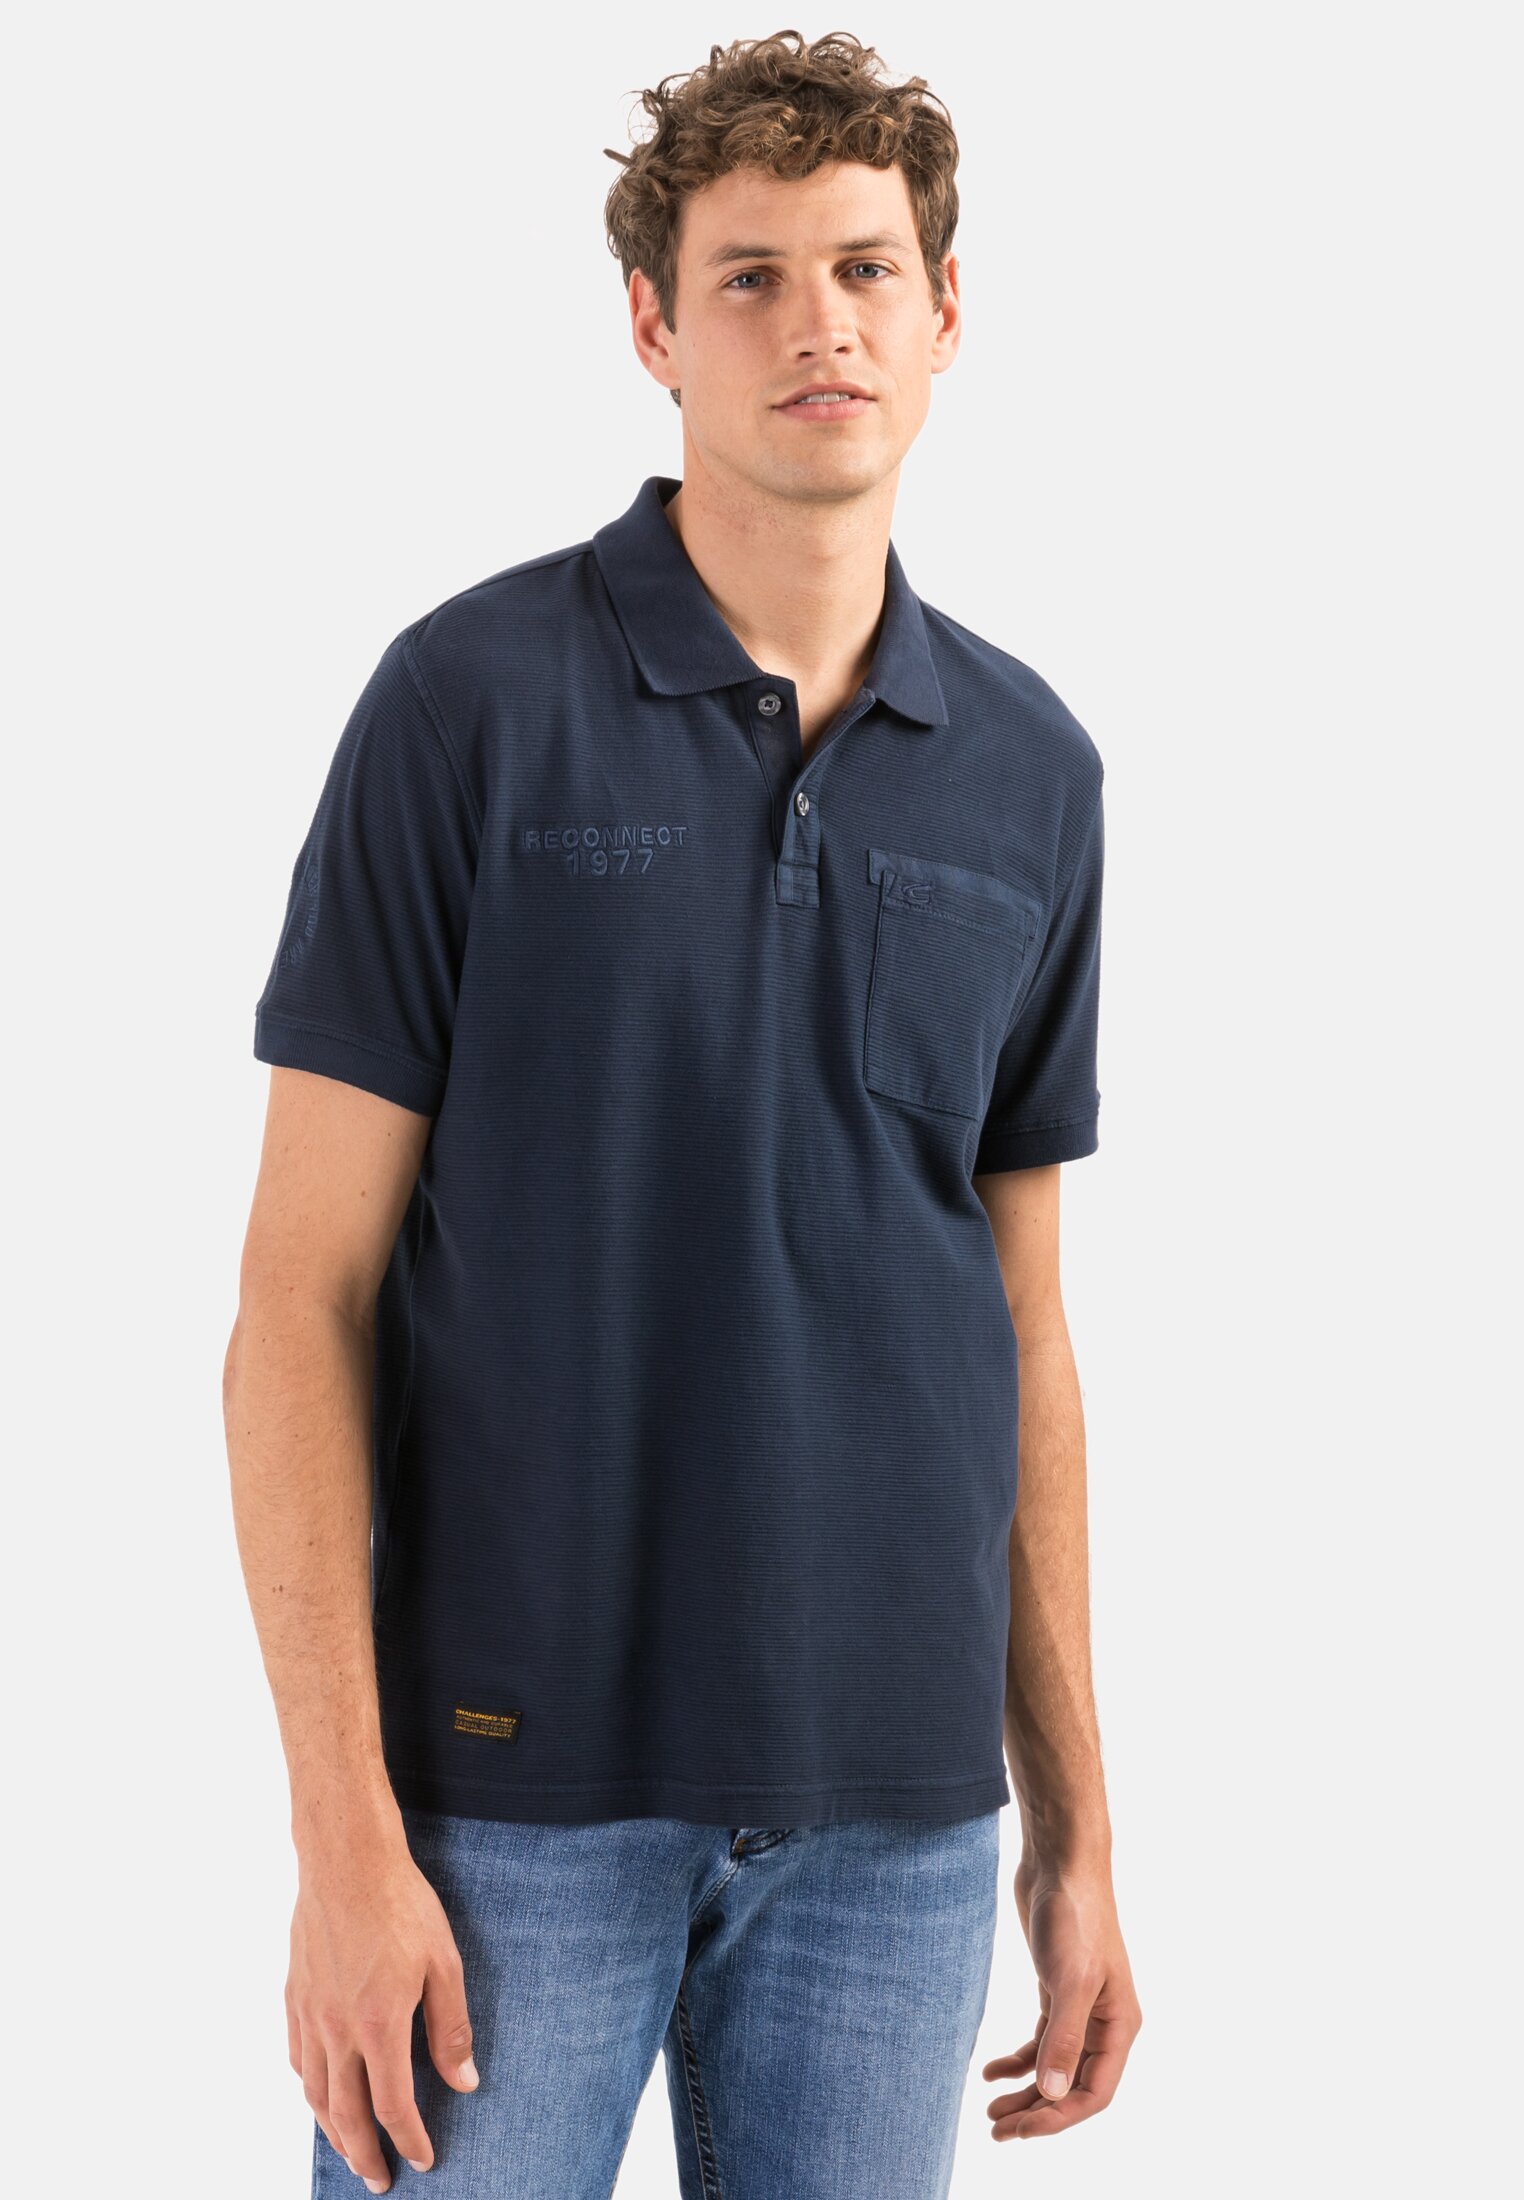 Camel active Men's Polo Shirt Navy Blue Plain 3P25 409473 16 